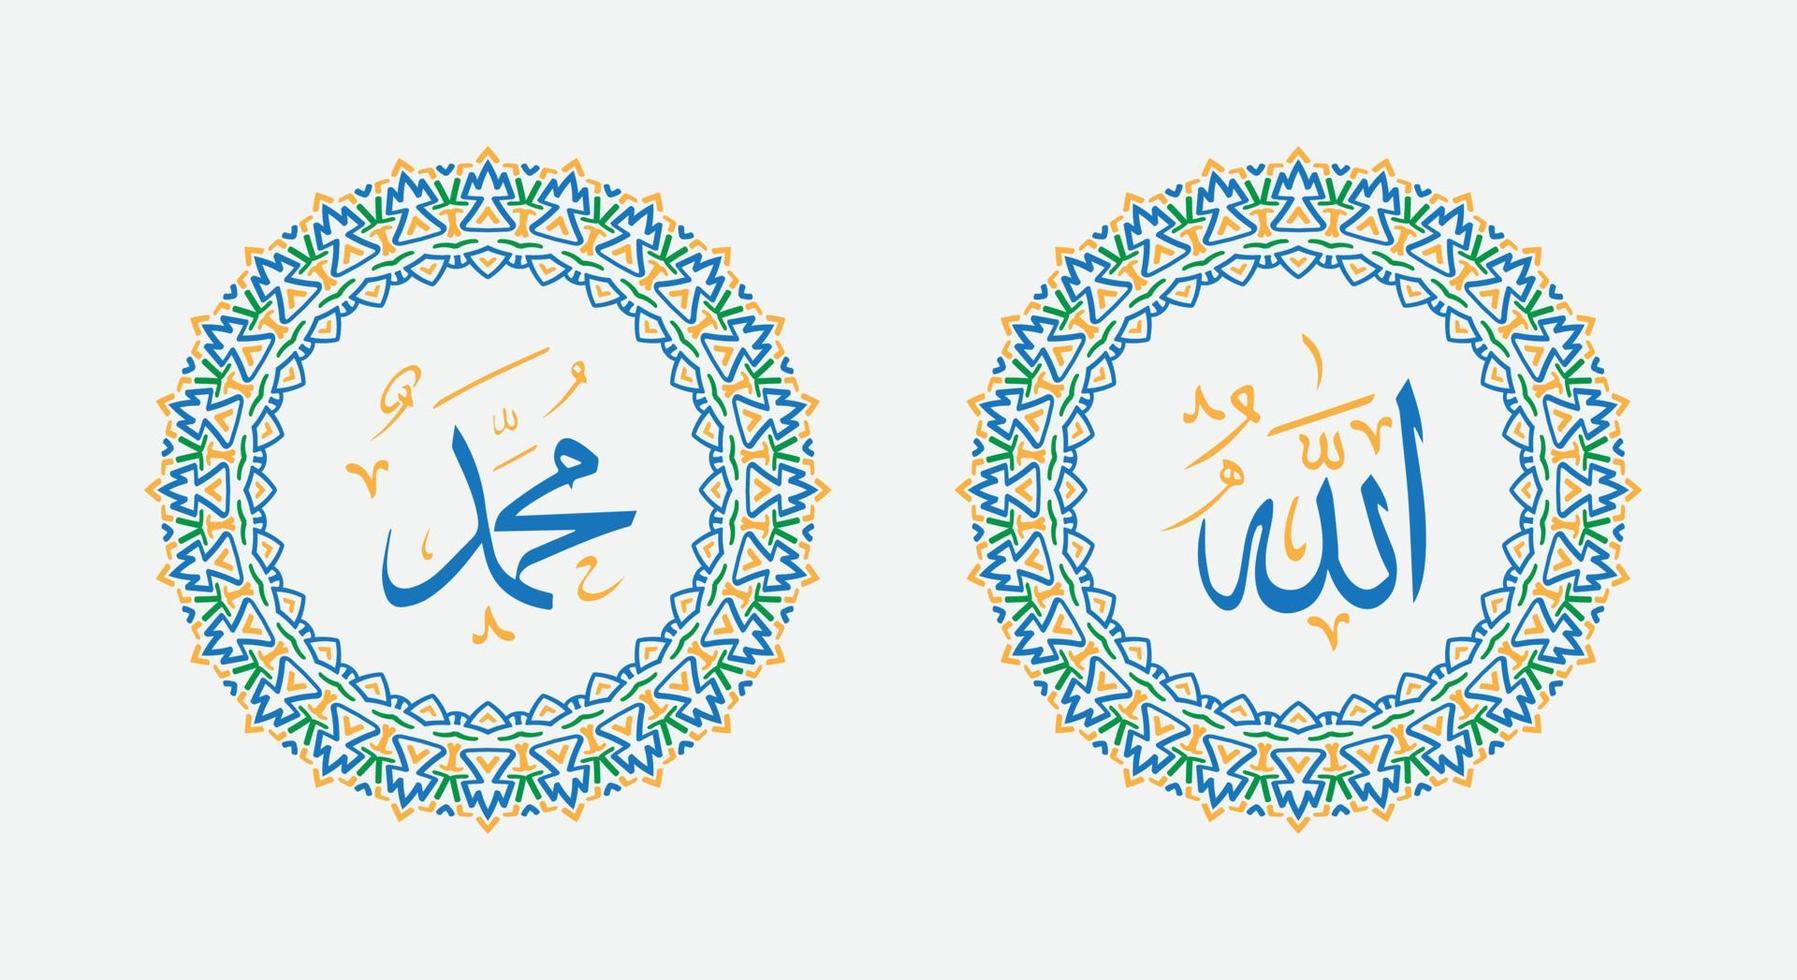 caligrafía árabe de allah muhammad con adorno redondo vintage o marco circular vector